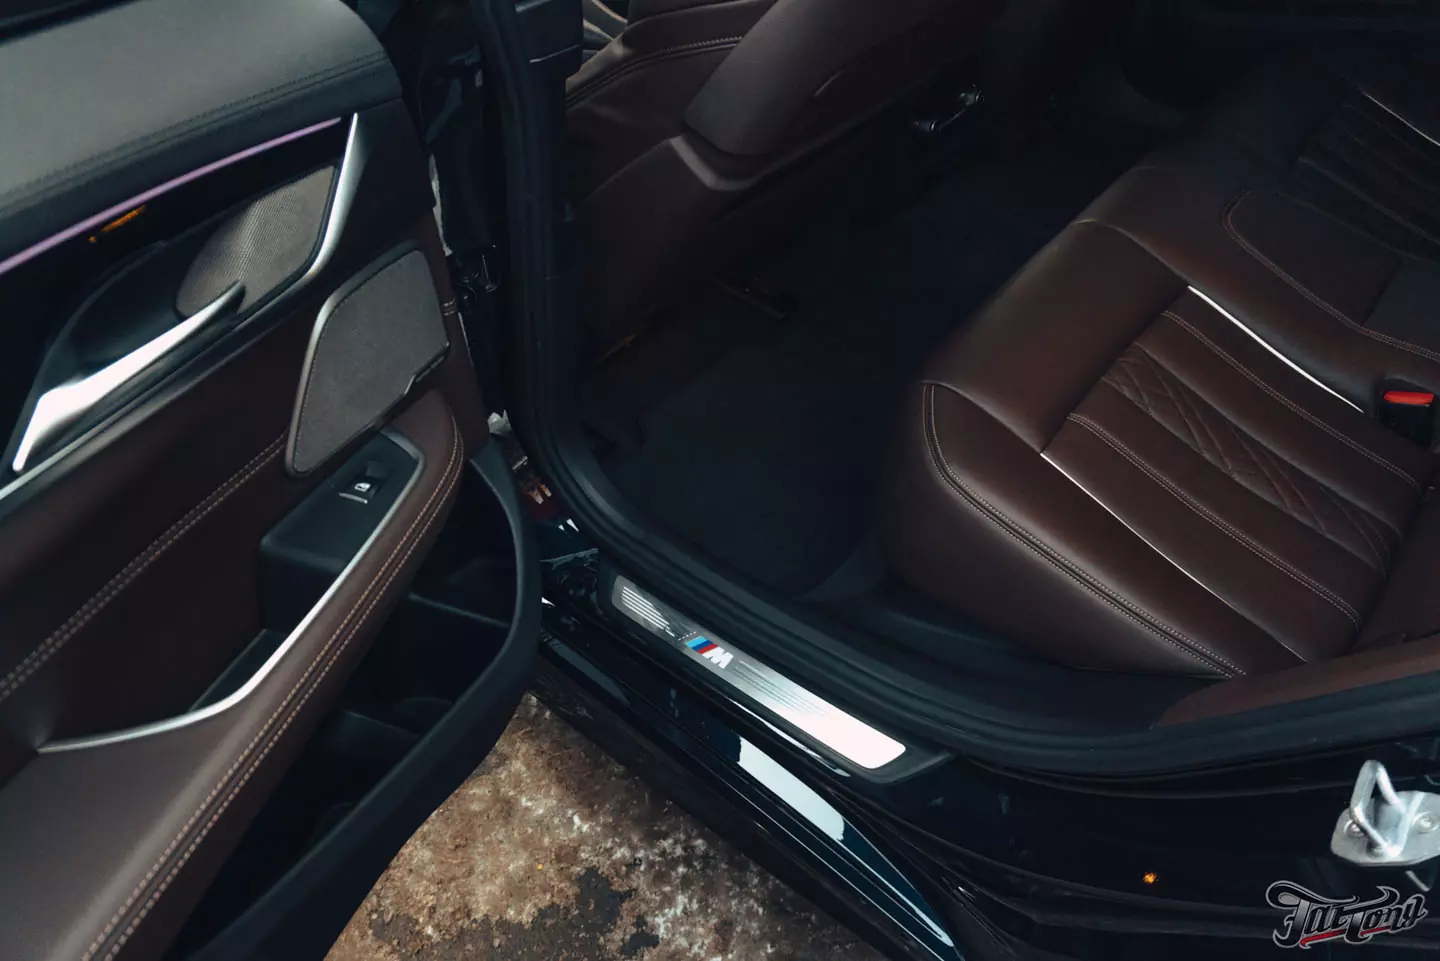 Оклейка полиуретаном BMW 630d GT, чистка и покрытие керамикой кожи